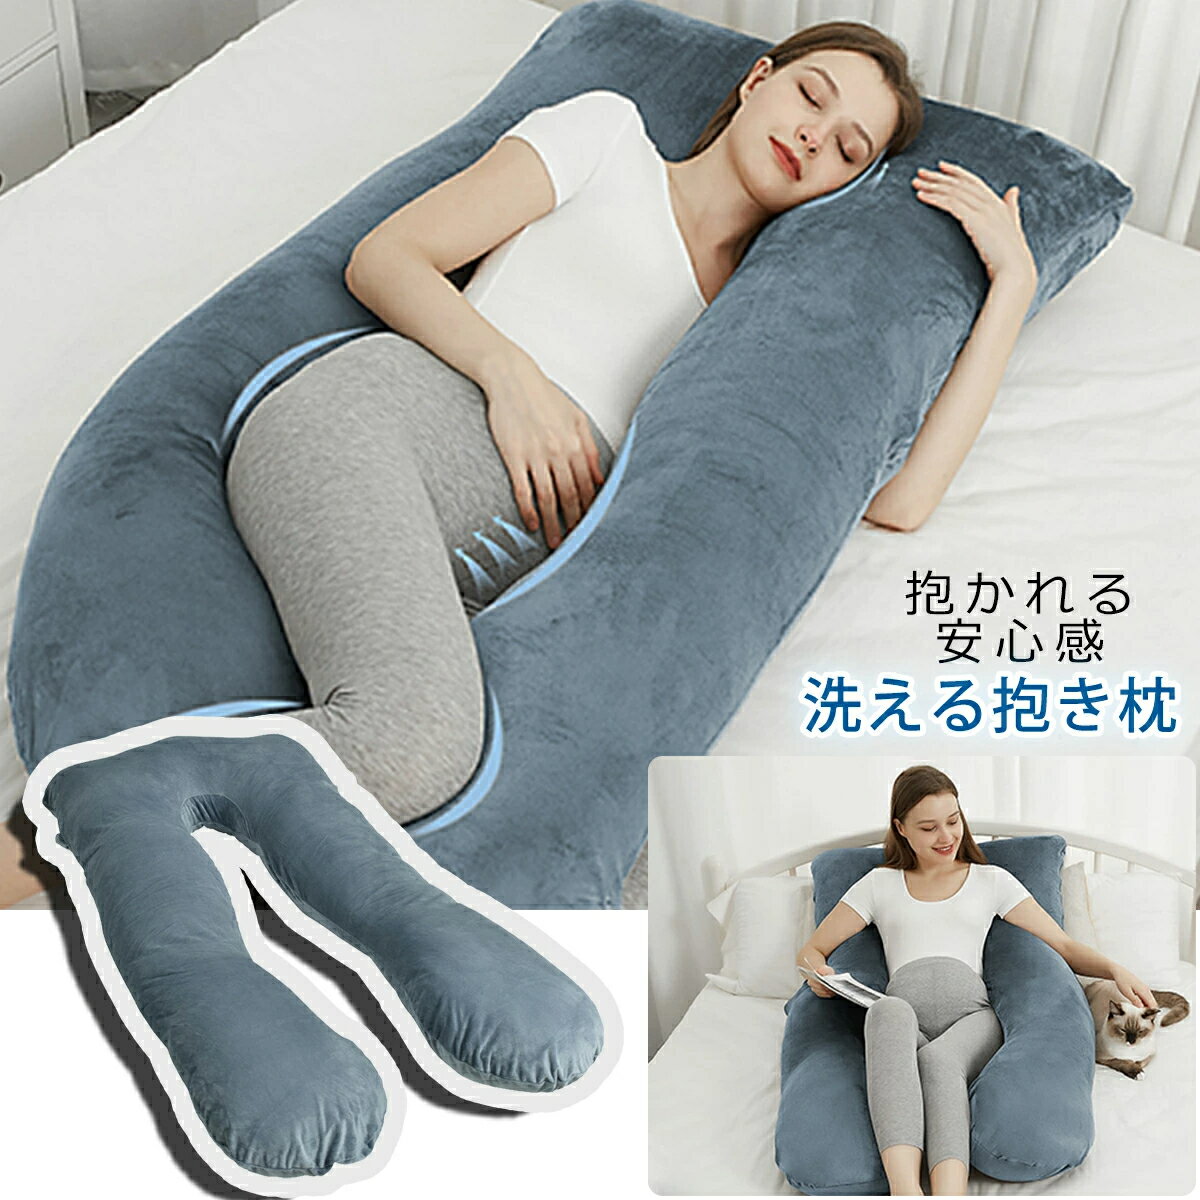 【最大150円割引】抱き枕 妊婦 枕 安